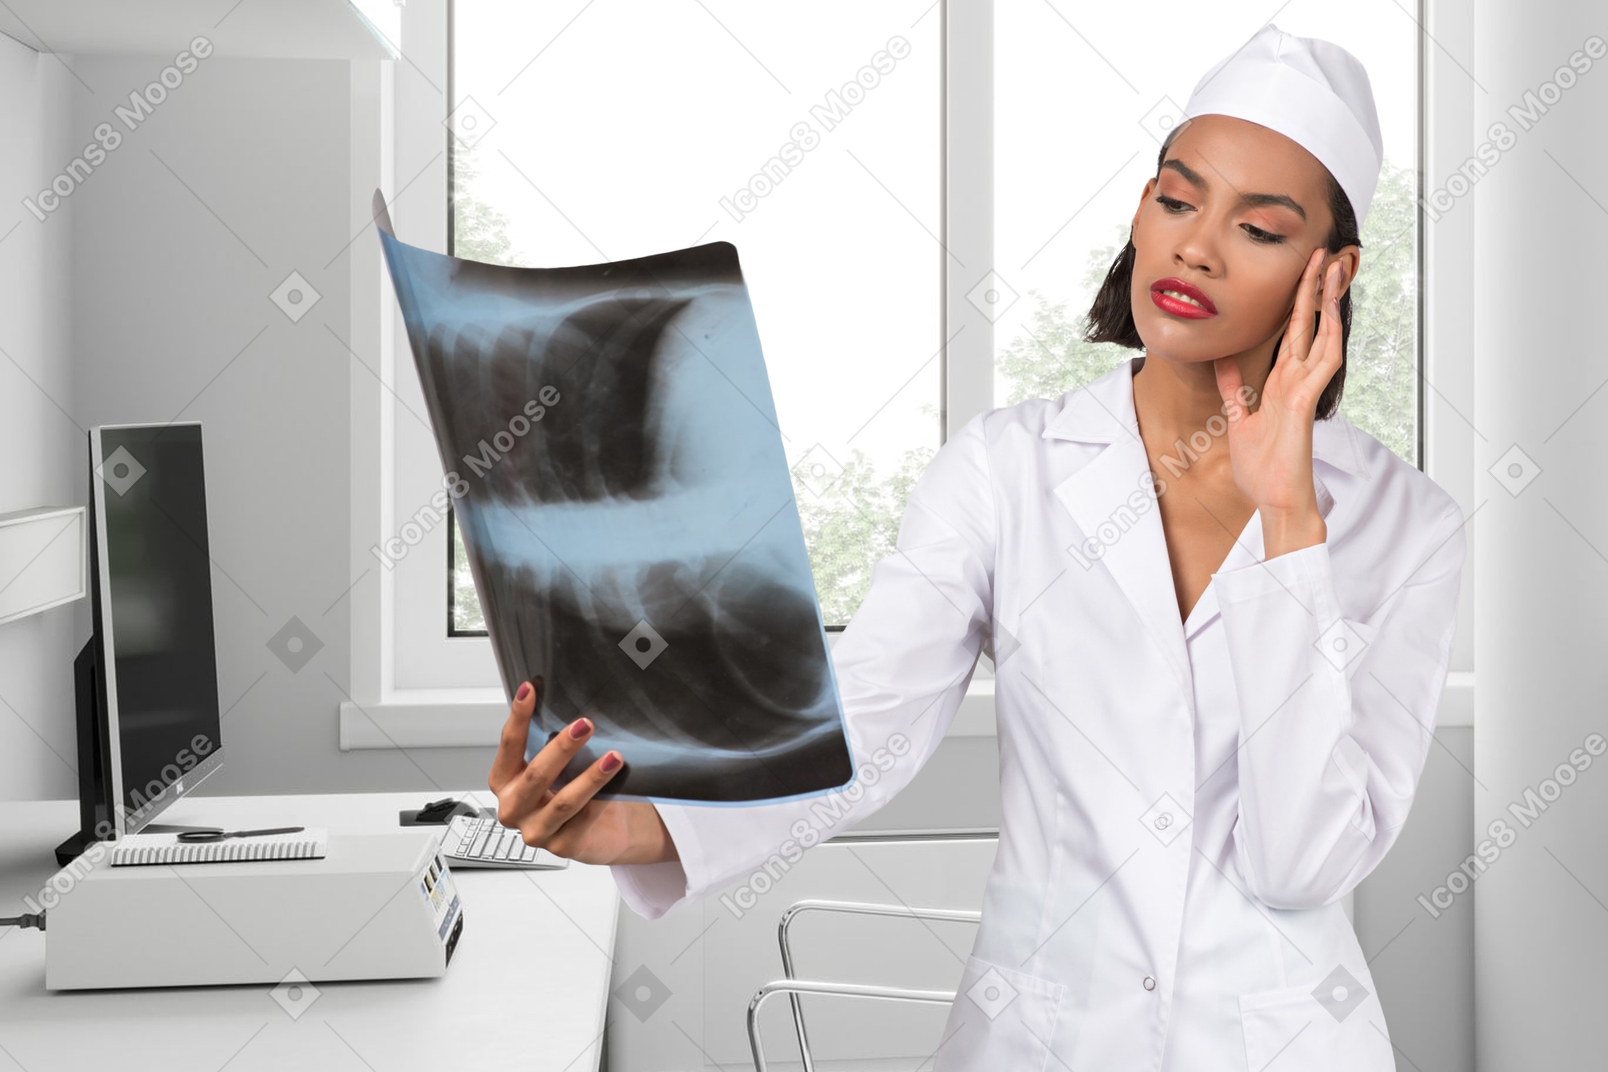 Ärztin, die ein röntgenbild betrachtet